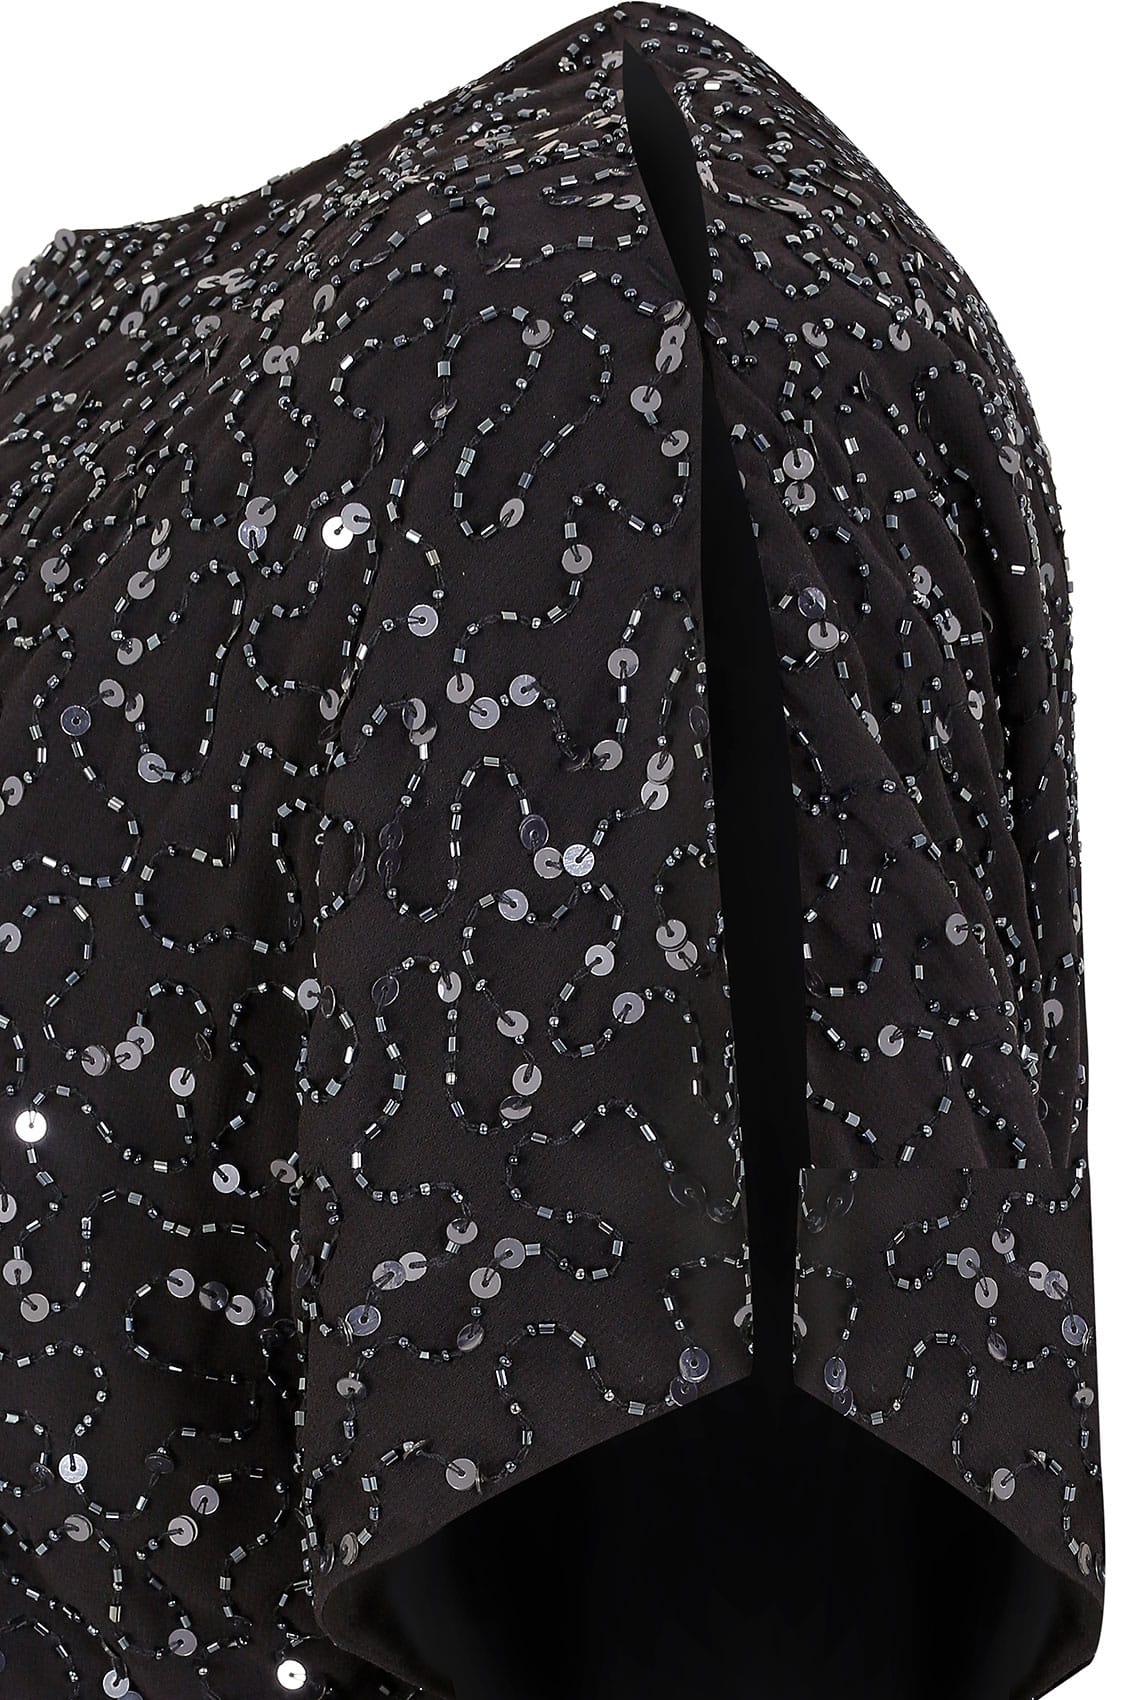 LUXE Black Sequin Cold Shoulder Cape Dress, plus size 16 